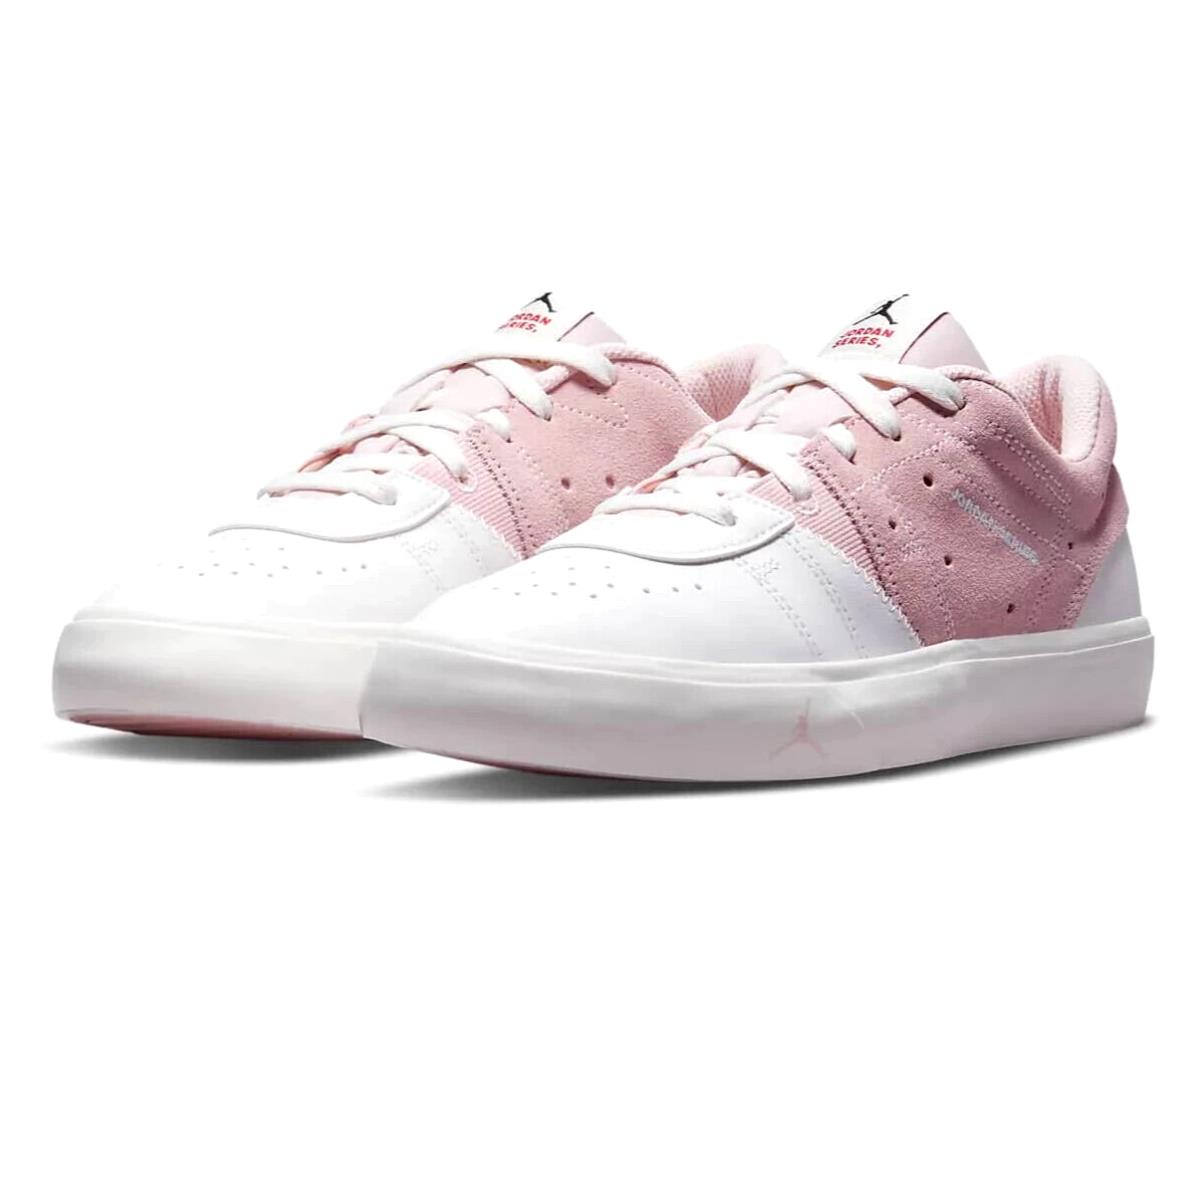 Nike Jordan Series ES Women Size 10.5 Shoes DN1857 610 Atmosphere Pink Sail - Pink